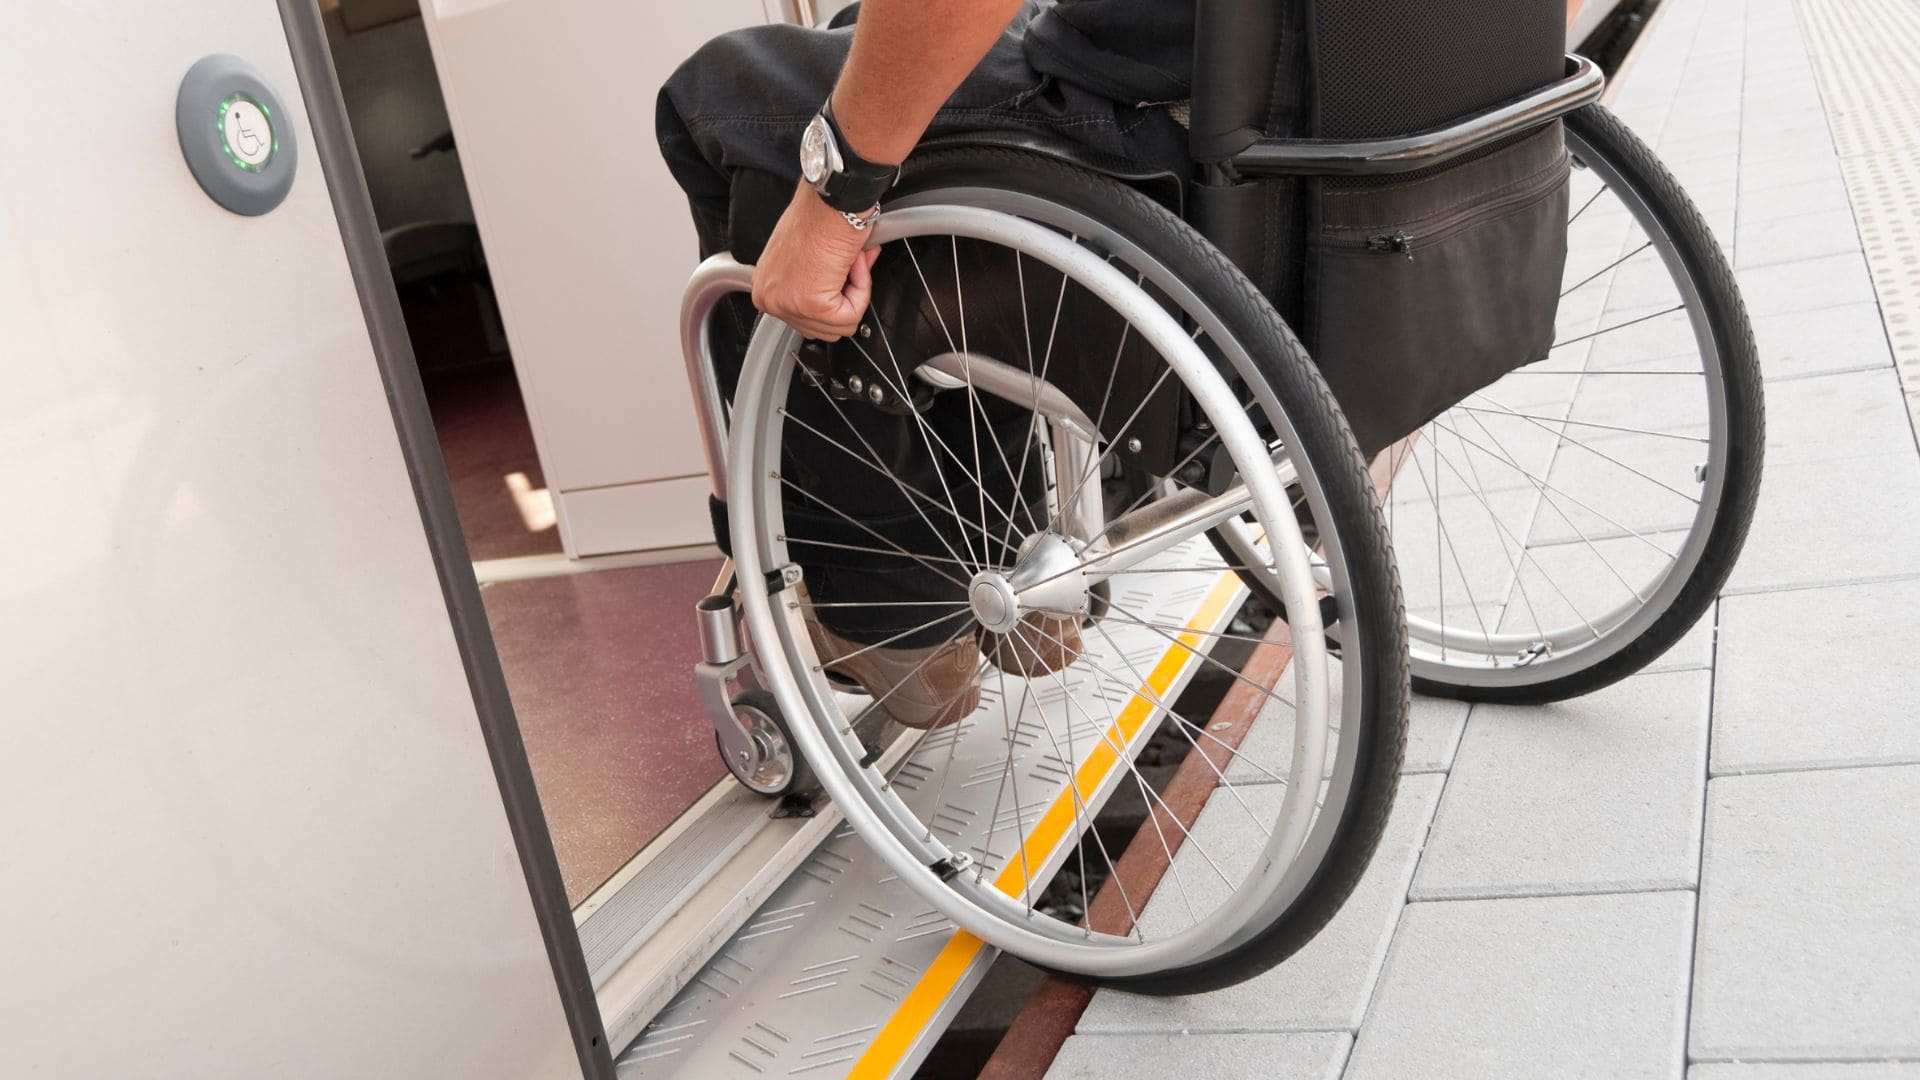 Renfe celebra la semana de la accesibilidad para las personas con discapacidad